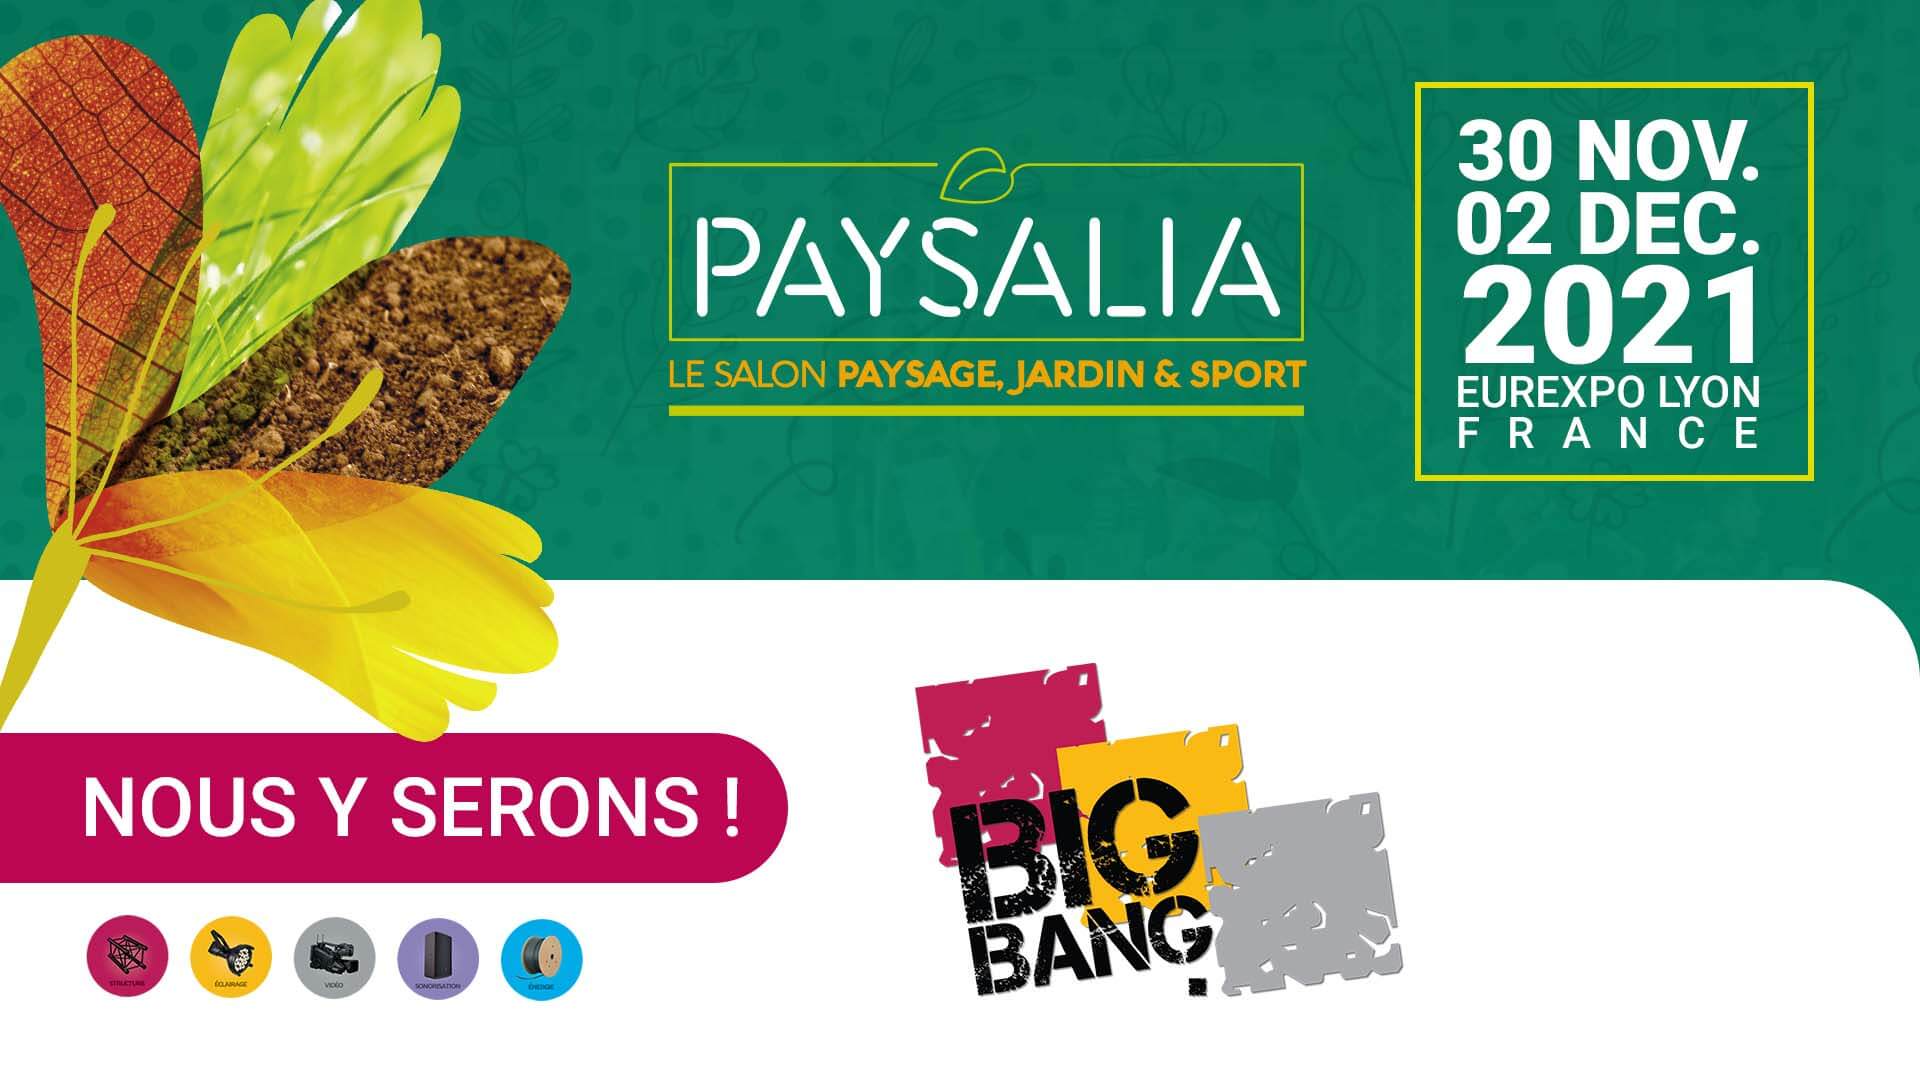 Le Salon Paysage, Jardin & Sport - Paysalia 2021